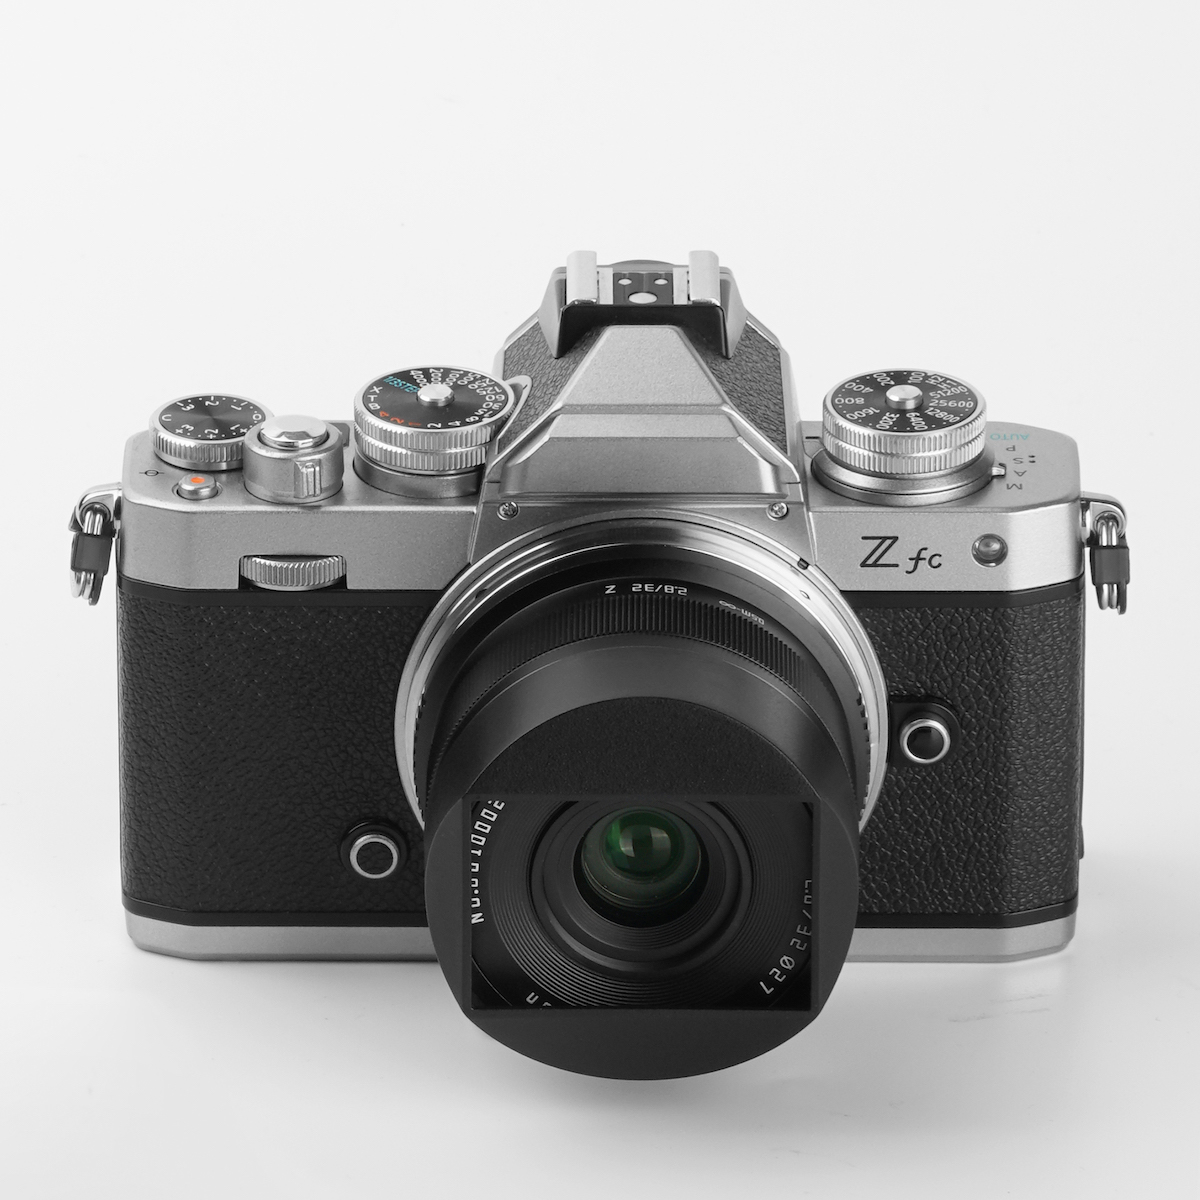 The new TTartisan 32mm f/2.8 full-frame autofocus lens for Nikon Z